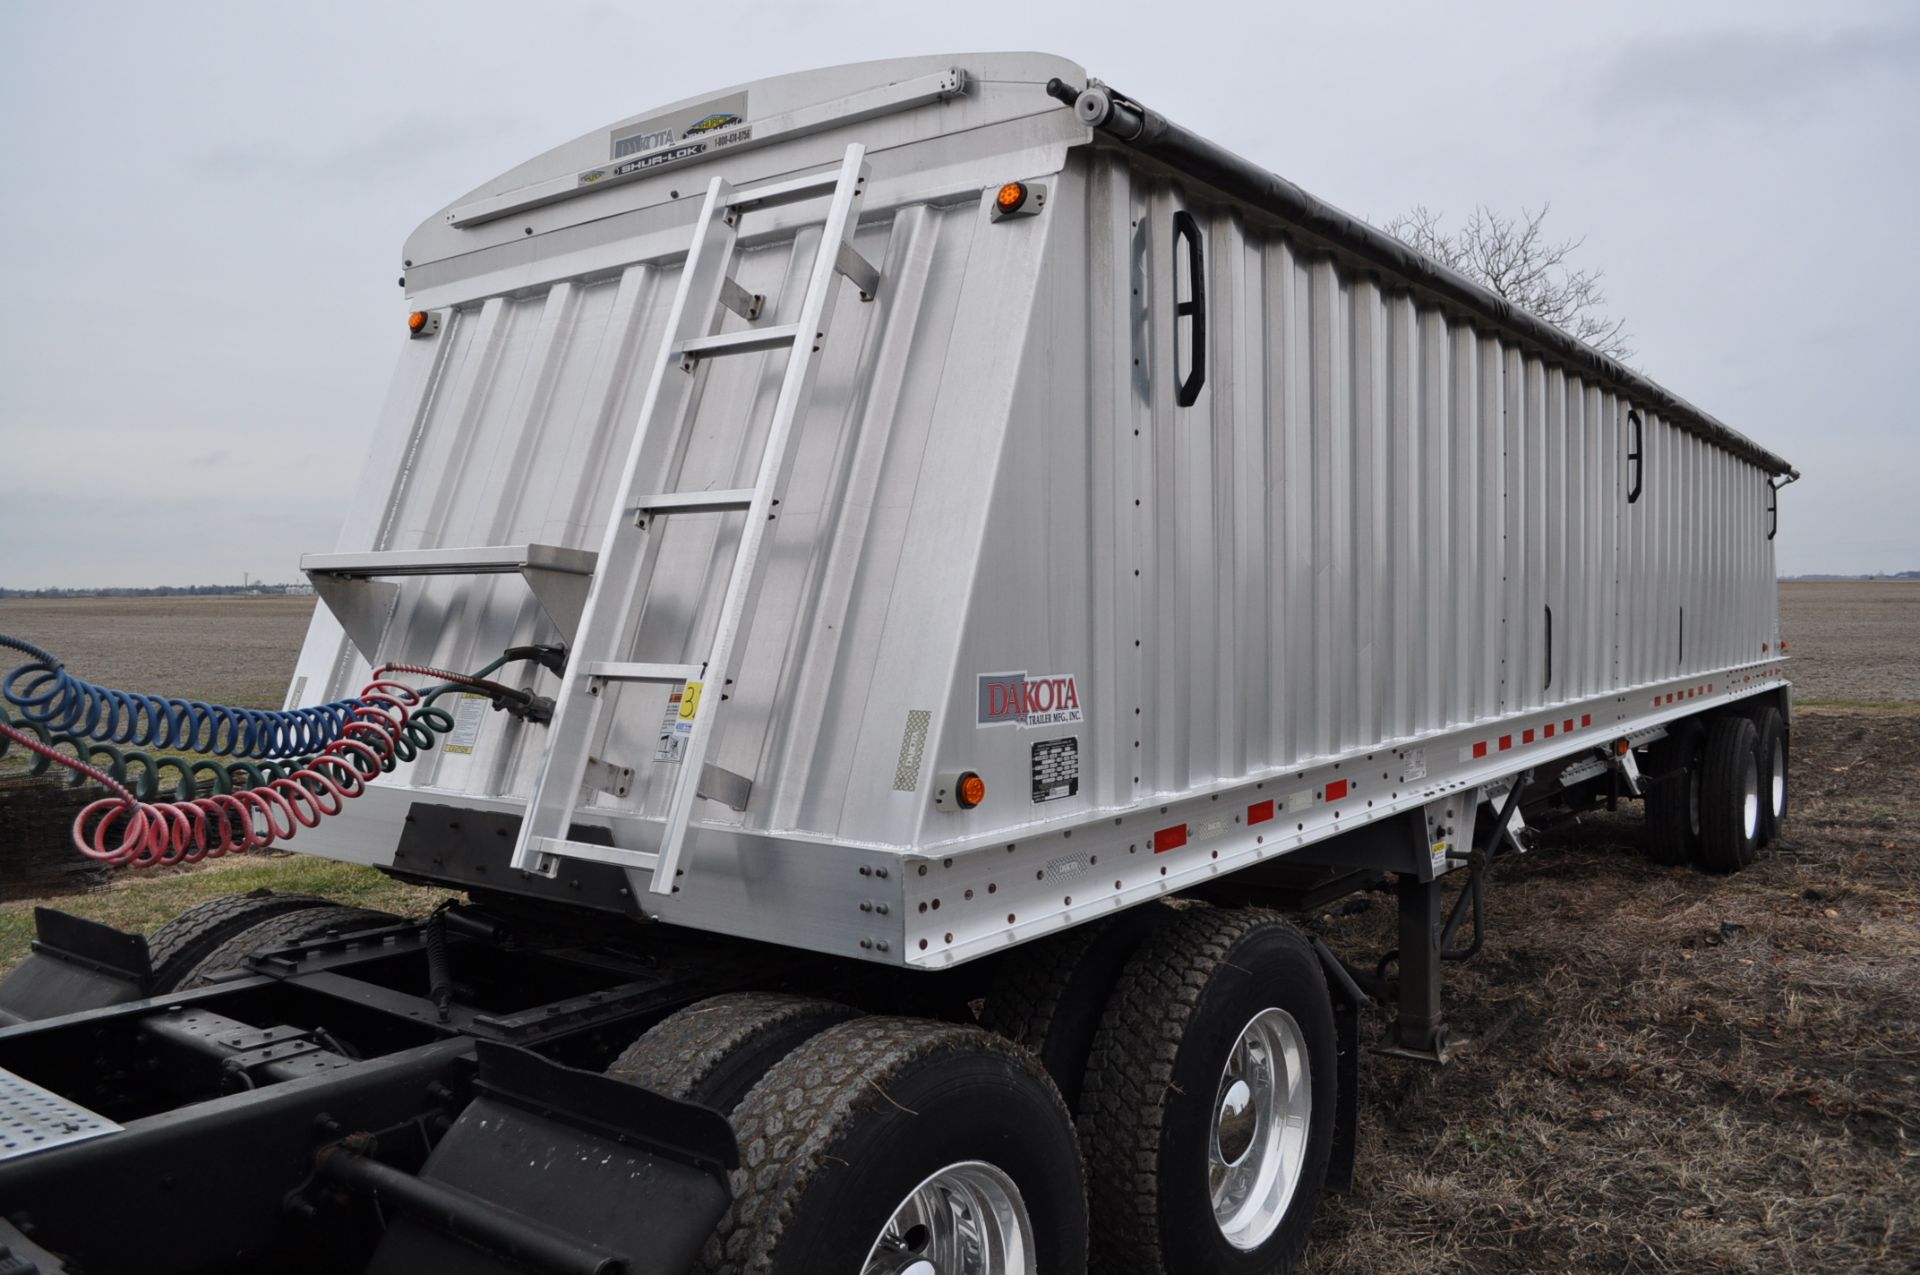 2012 36’ Dakota aluminum trailer, tandem axle, spring ride, 4 aluminum wheels, 11 R 22.5 tires